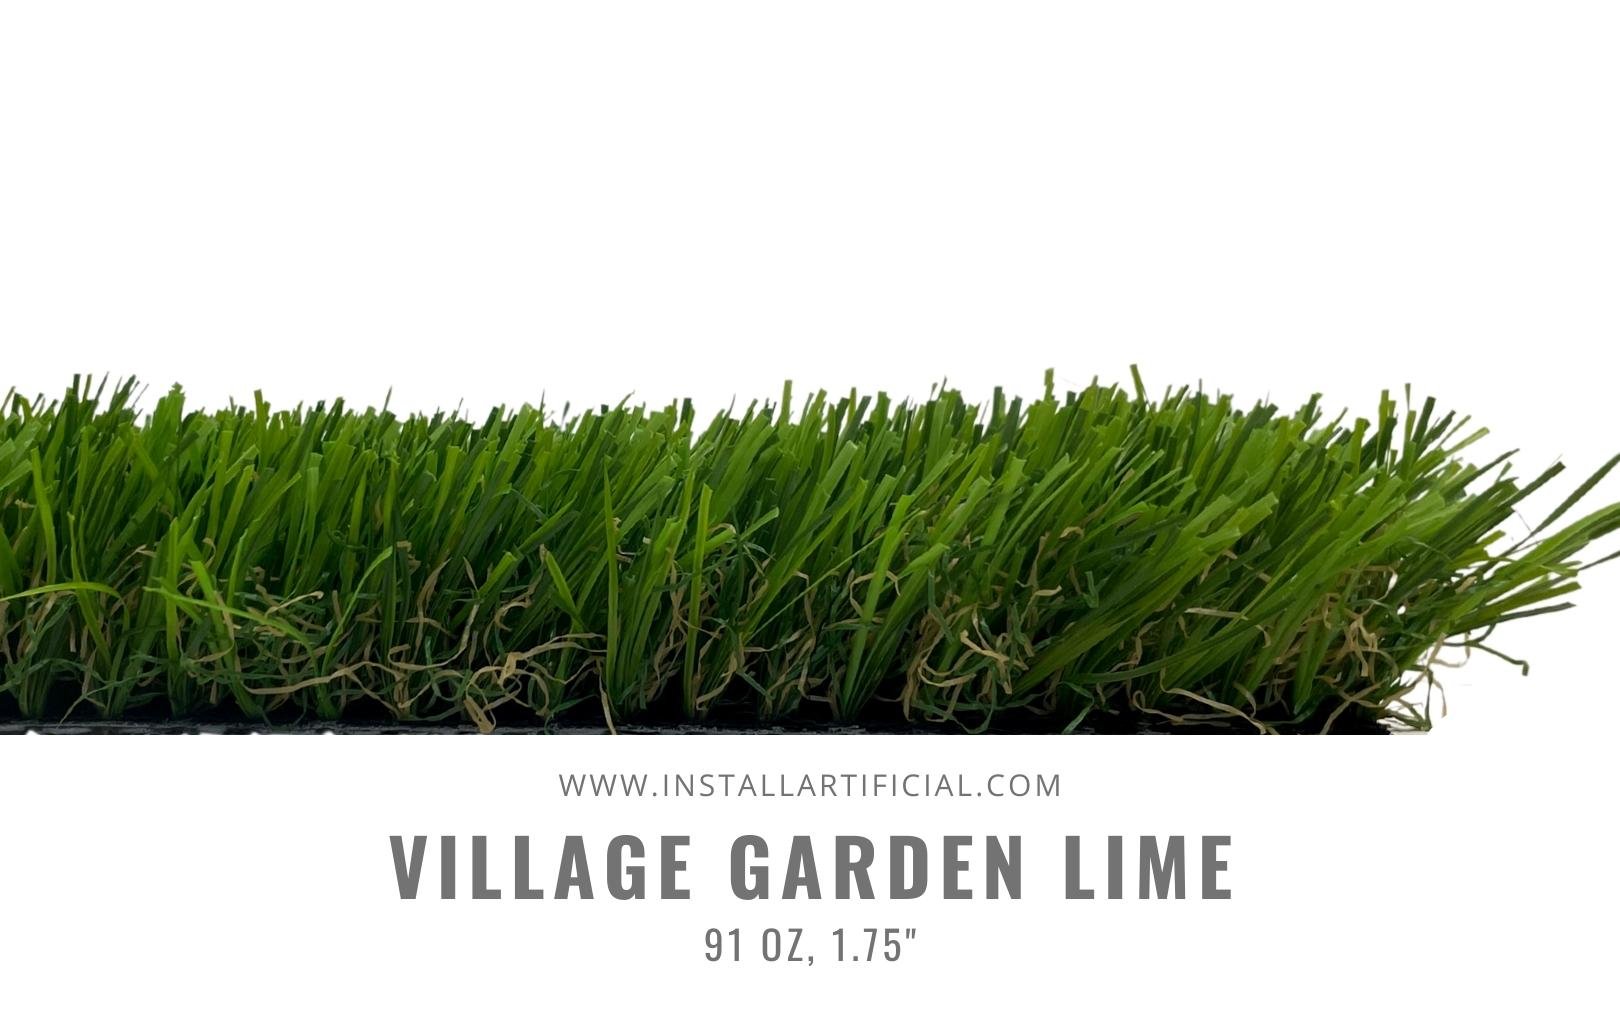 Village Garden Lime, Shaw Grass, Side